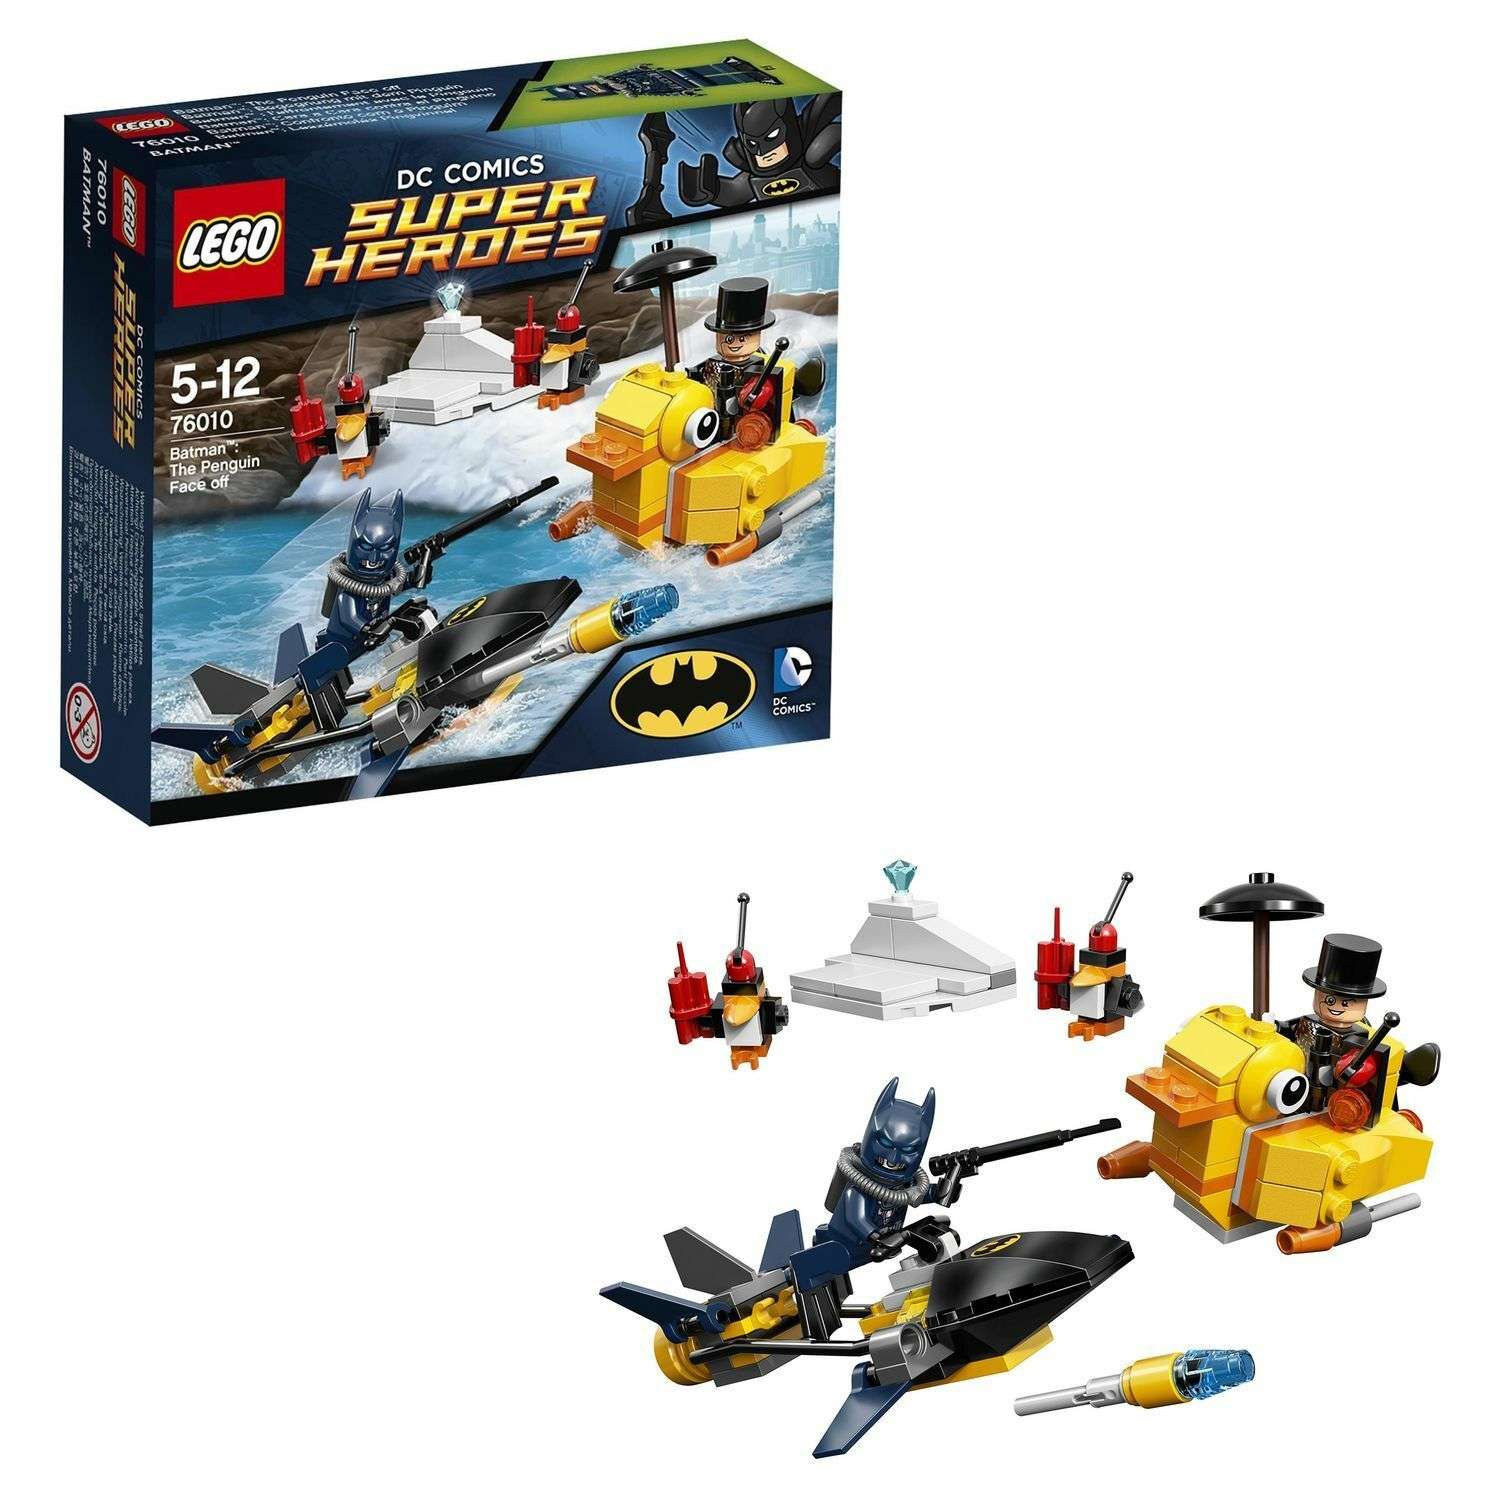 Конструктор LEGO Super Heroes Бэтмен™: Пингвинья Битва (76010) - фото 1